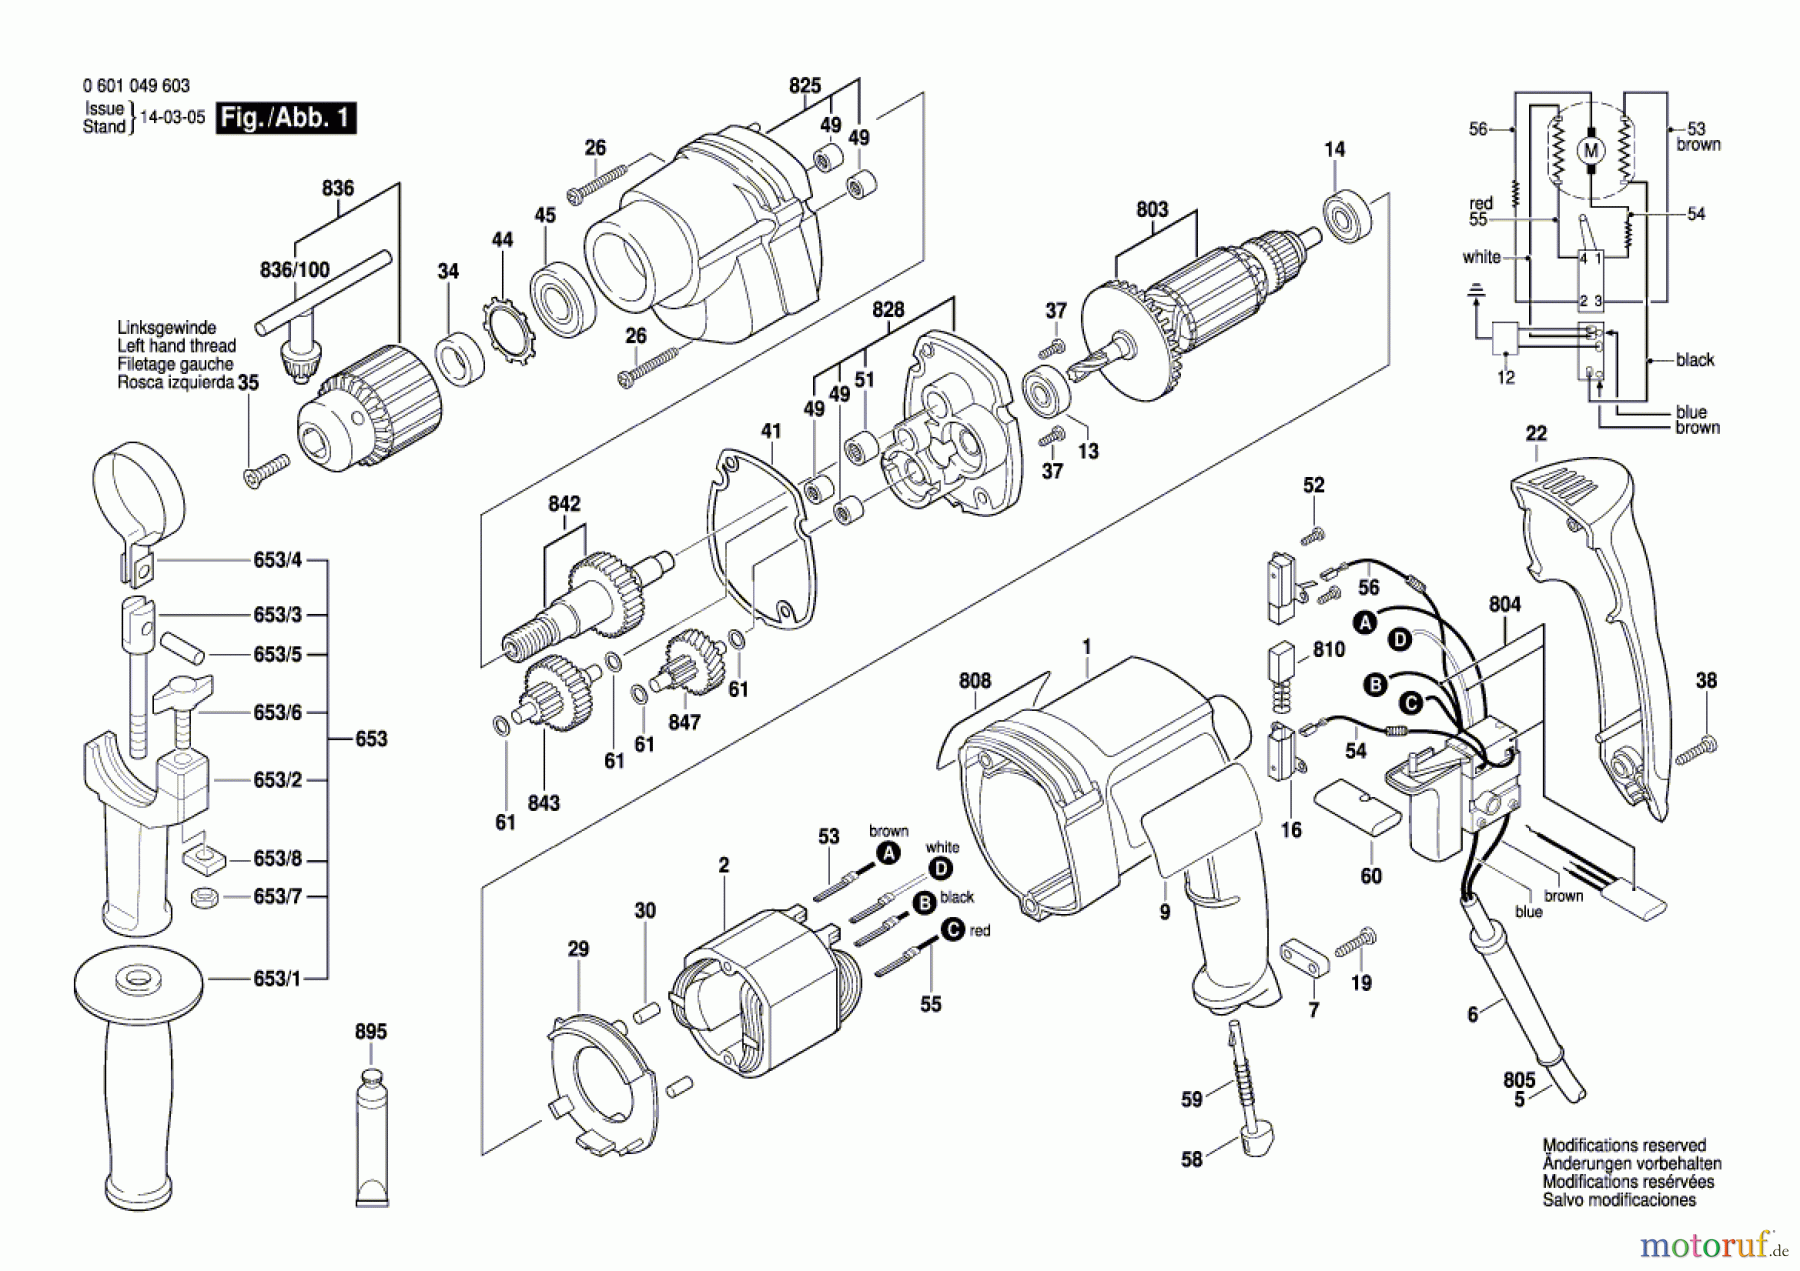  Bosch Werkzeug Bohrmaschine GBM 13 HRE Seite 1